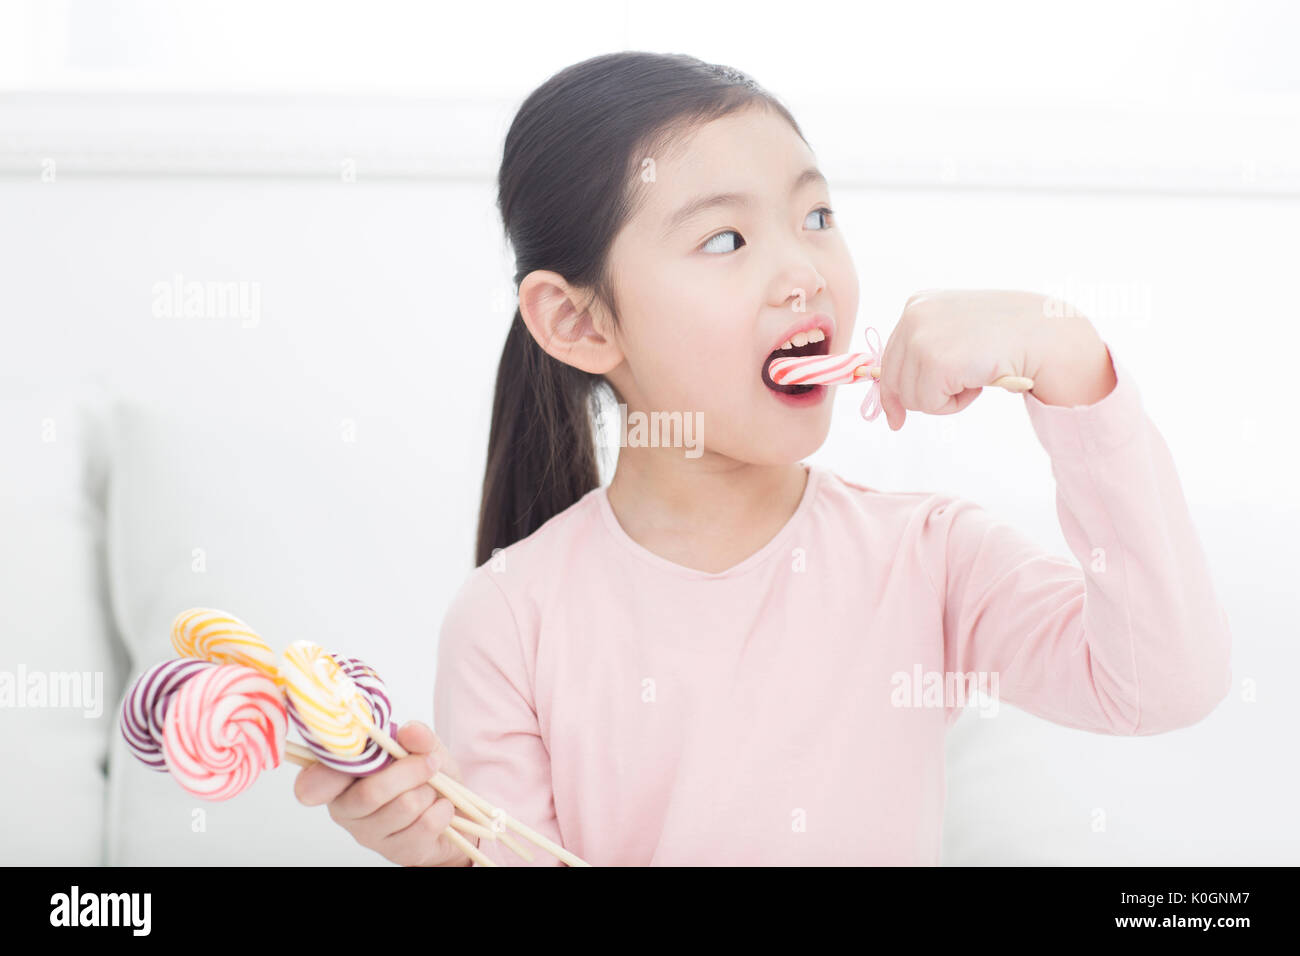 Portrait of girl eating lollipops Stock Photo